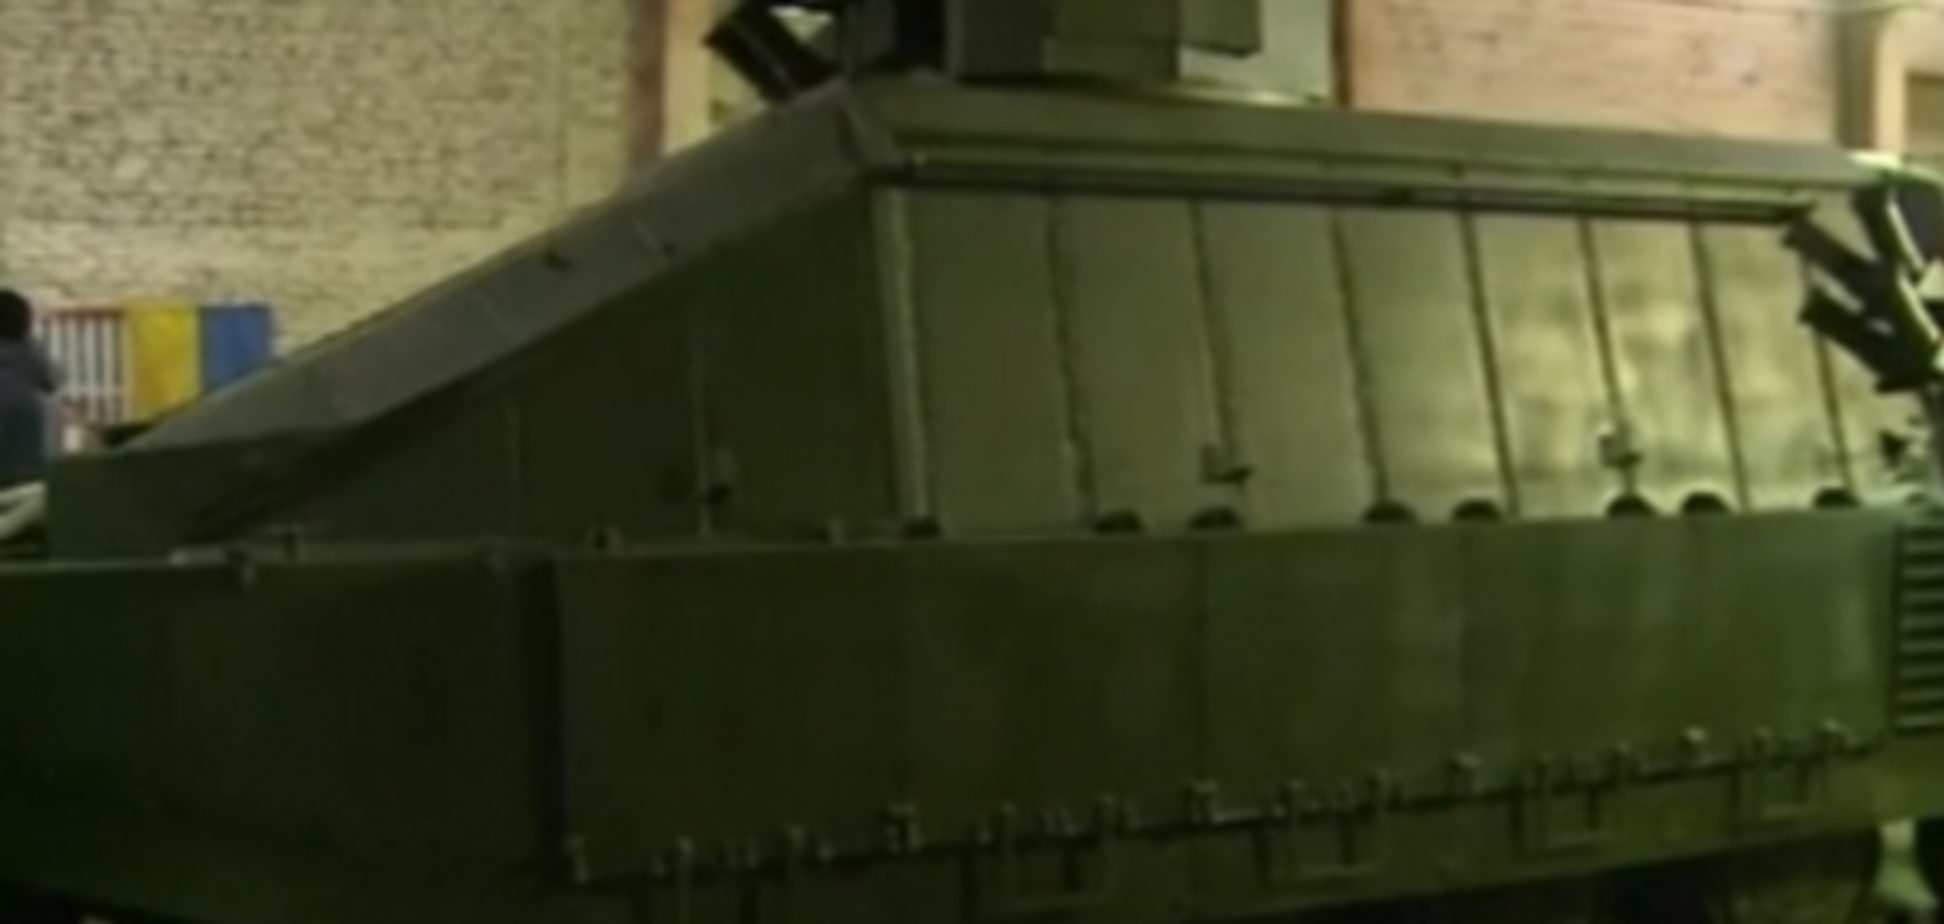 Не имеет аналогов в мире: Авакову представили танк 'Азовец' с уникальной защитой. Видеофакт